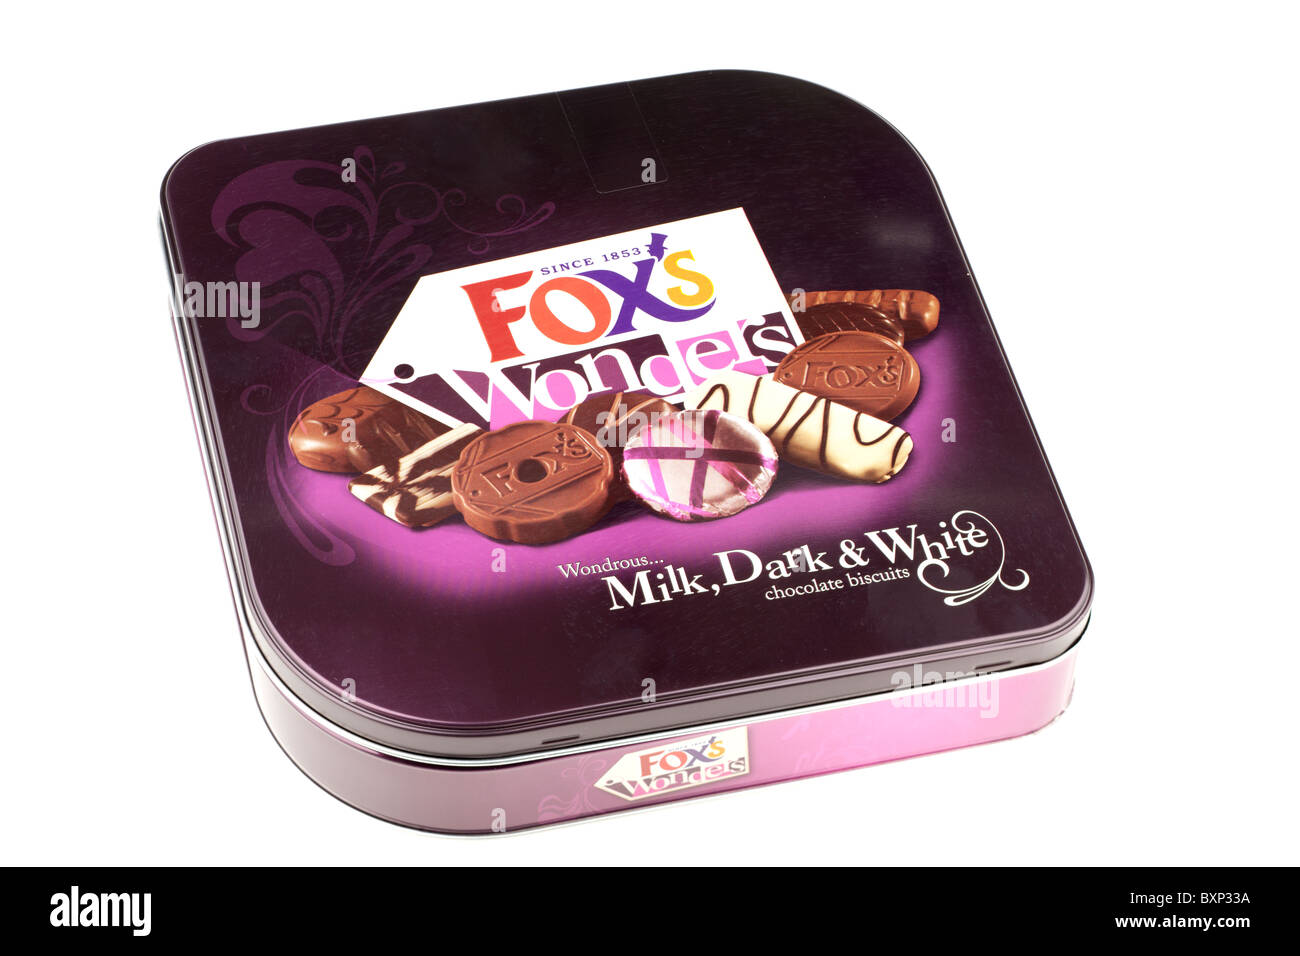 Tin box of Foxs wonders wondrous milk dark and white chocolate biscuits Stock Photo